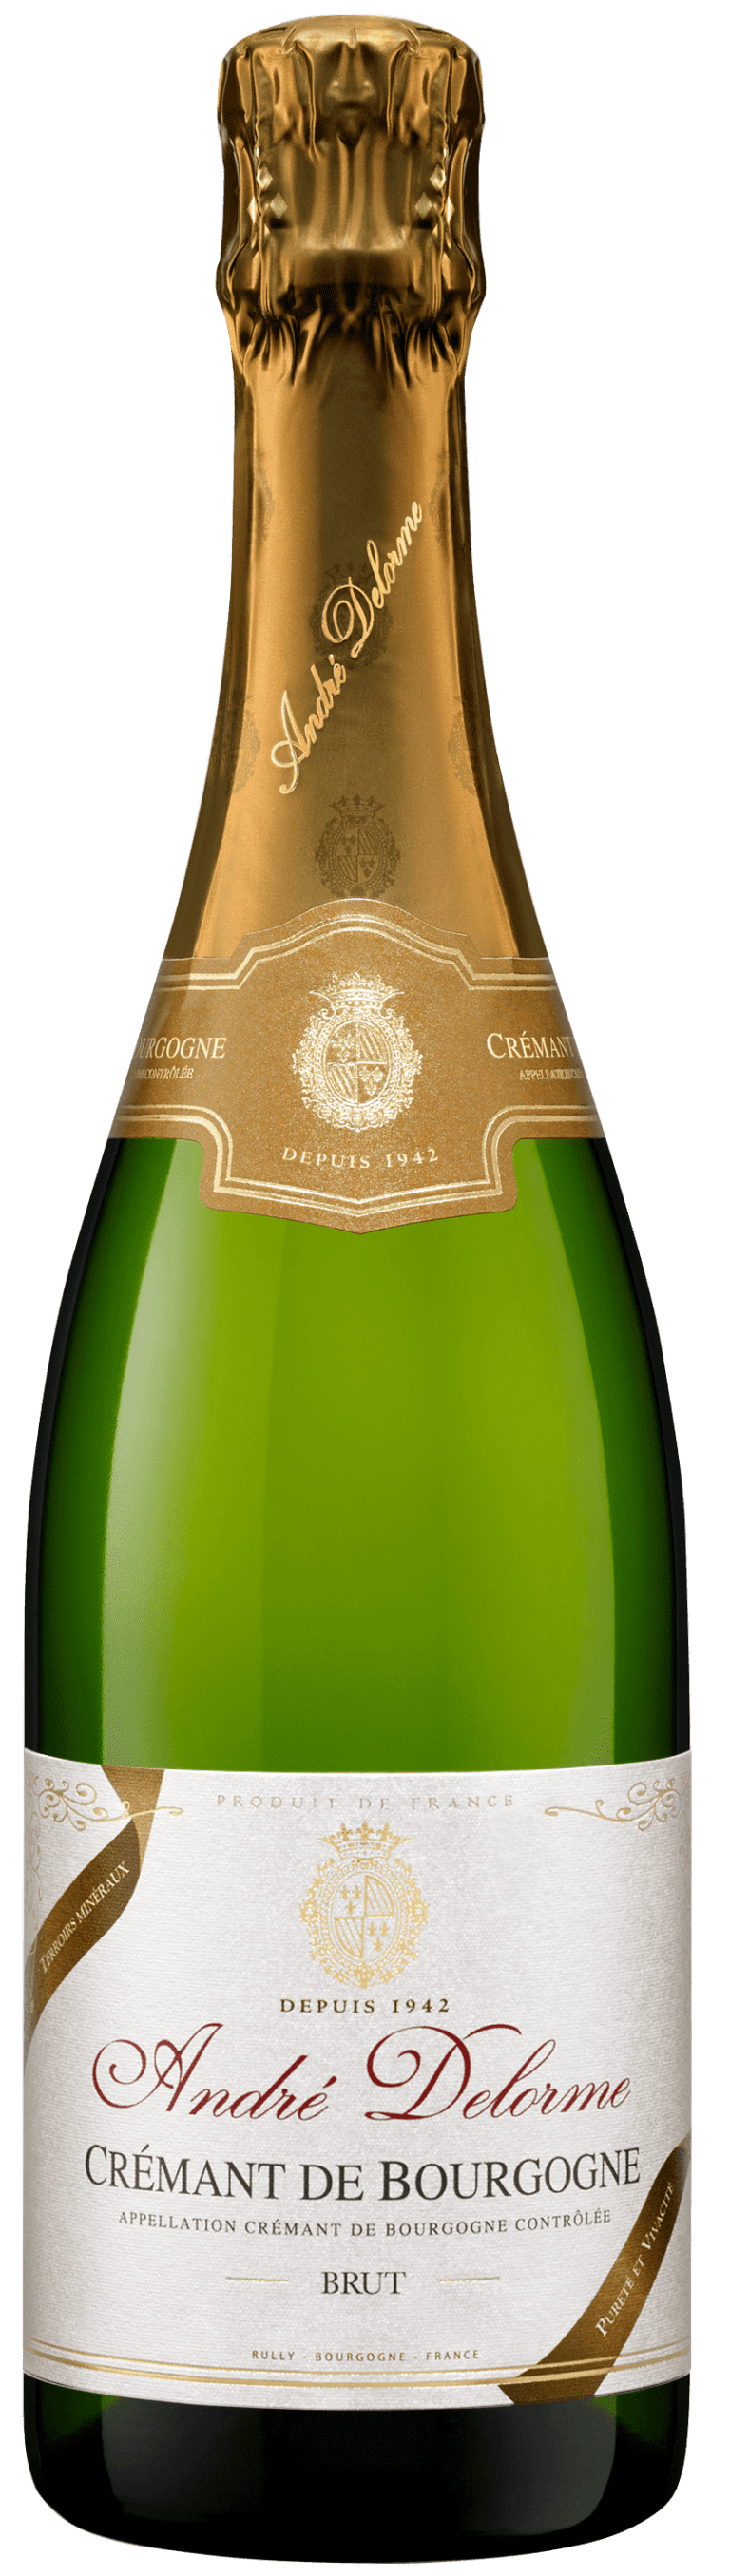 ANDRE DELORME - Crémant de Bourgogne - Terroirs Minéraux -Blanc-Brut-75CL